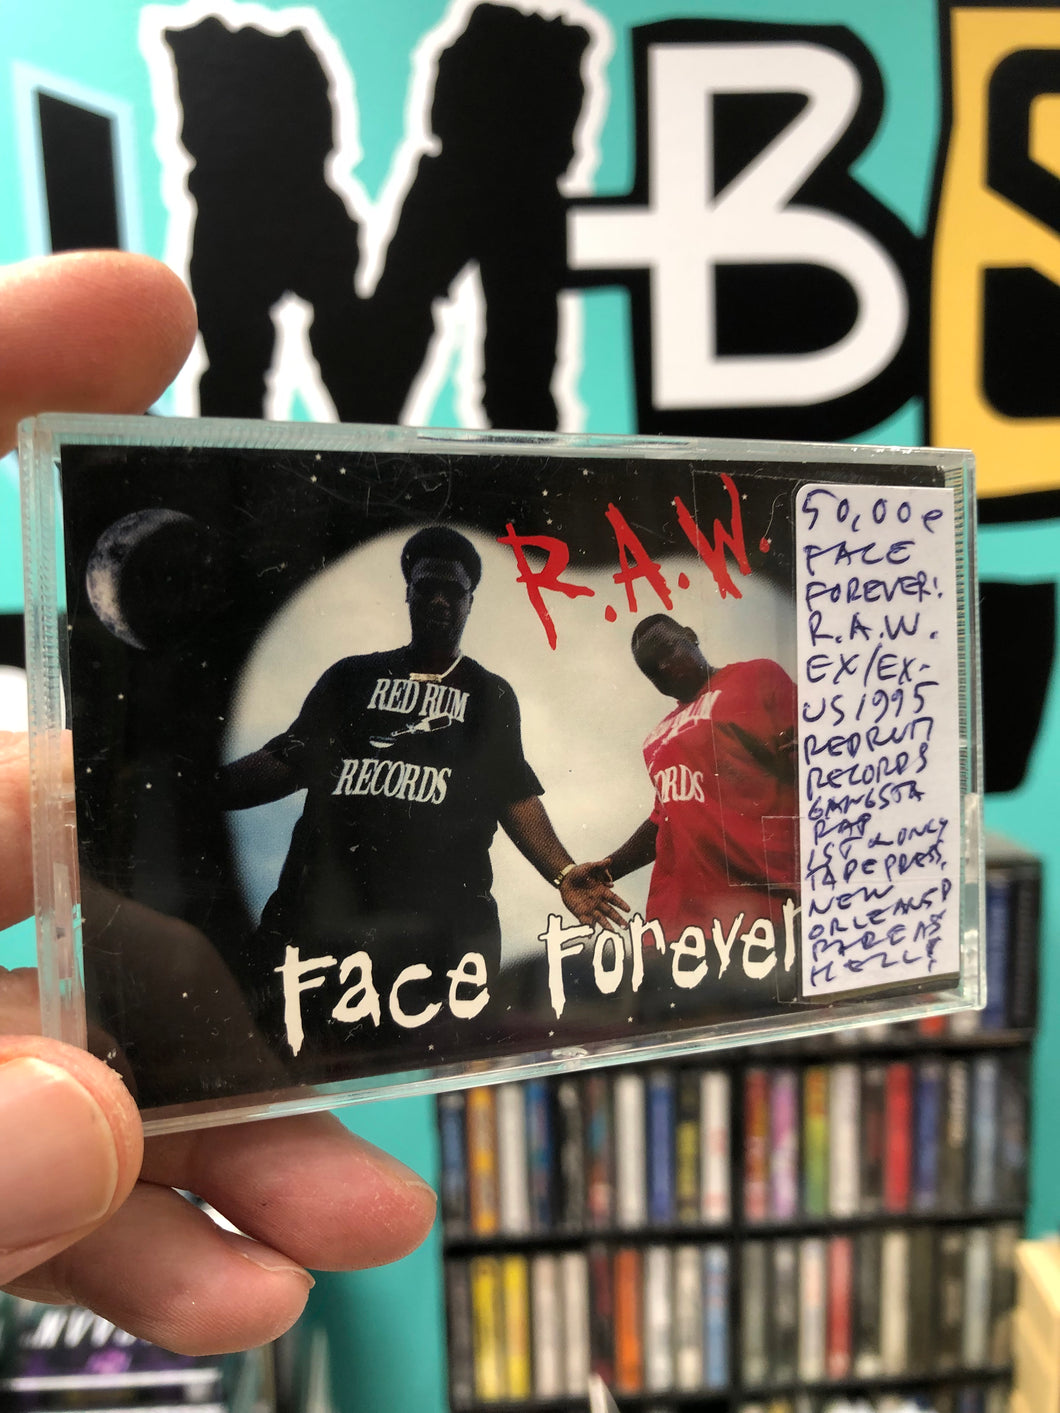 Face Forever: R.A.W. , OG, kasetti